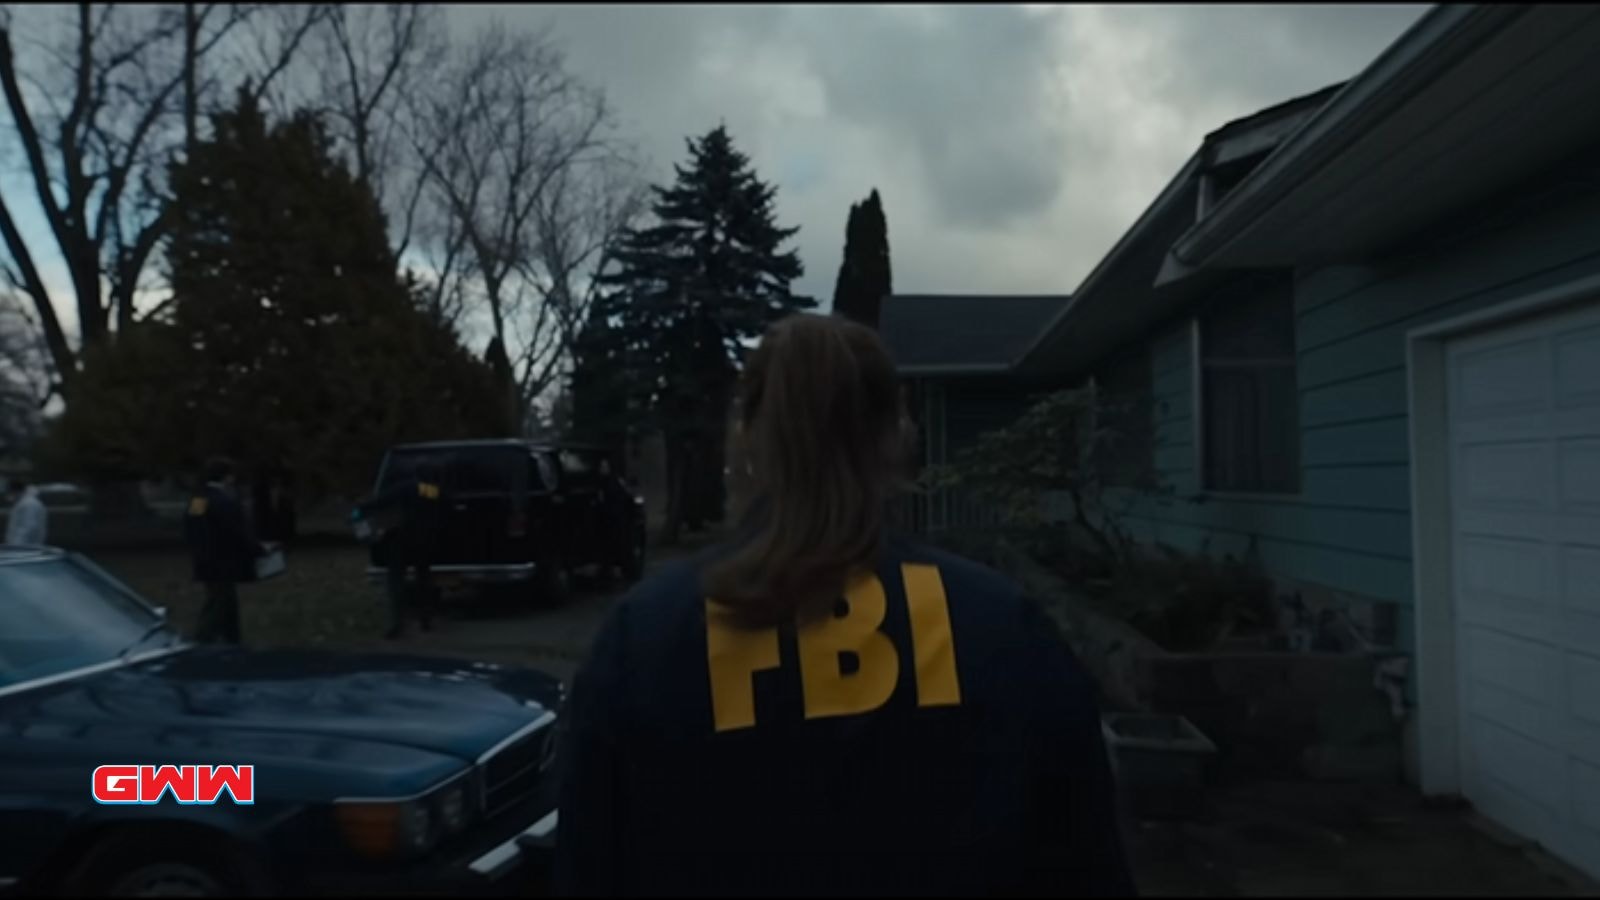 Agent Lee Harker in her FBI uniform